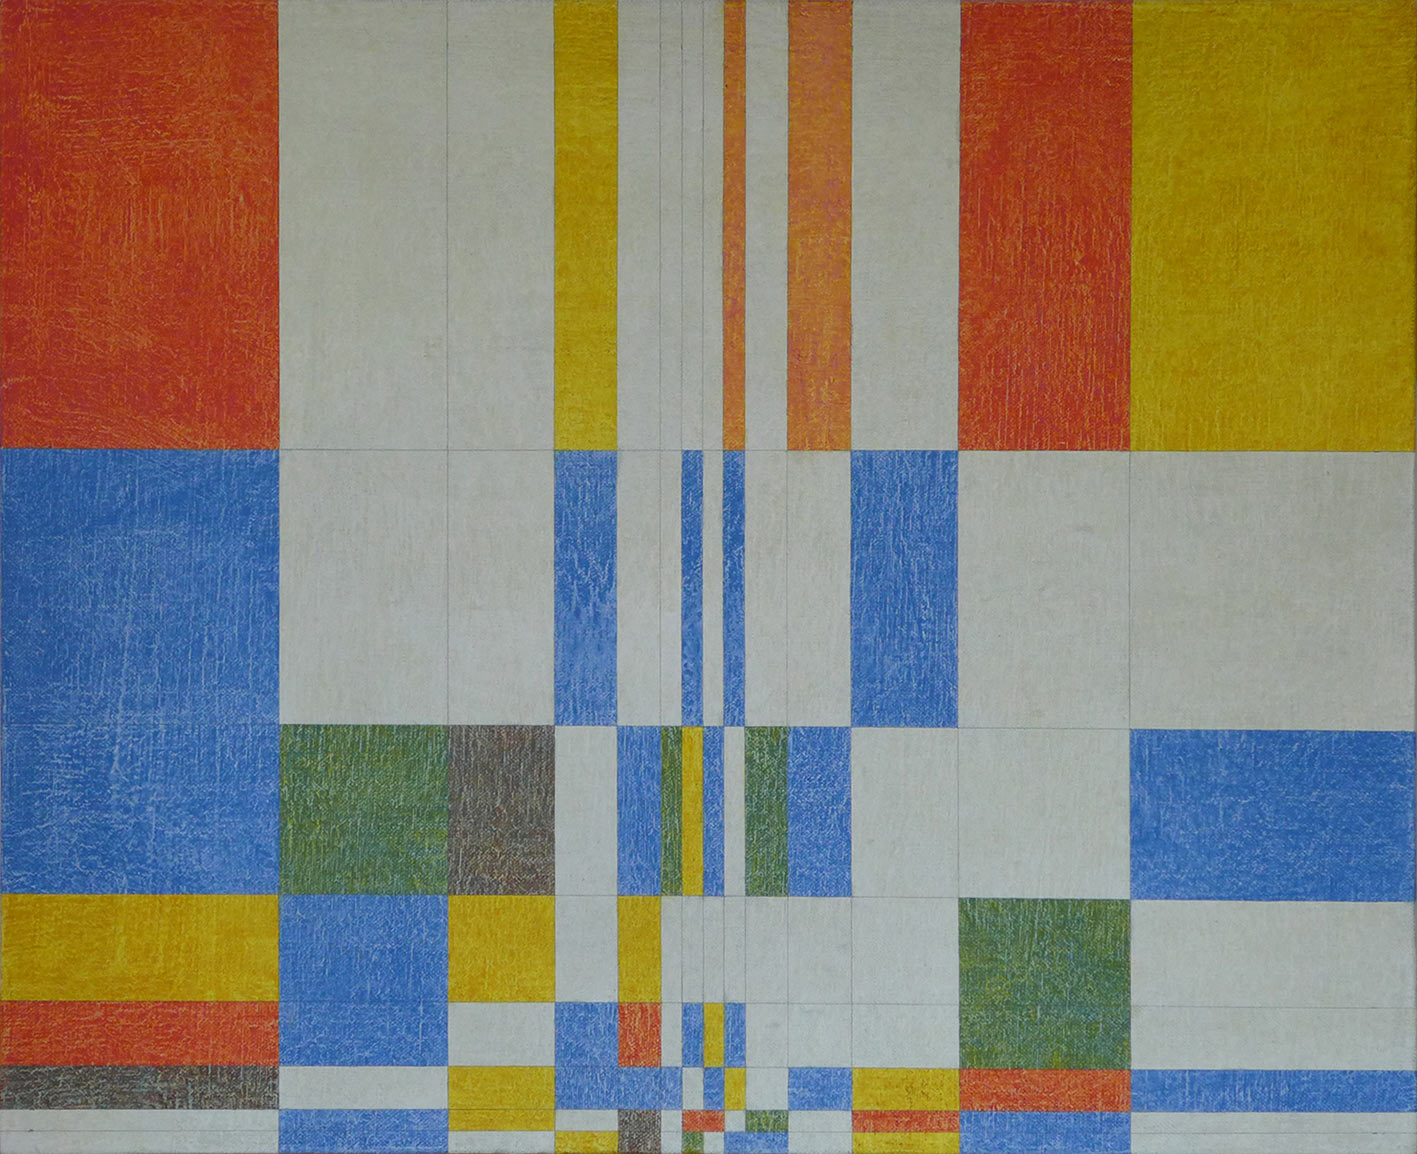 Une expansion de bleu, jaune et rouge, du milieu en bas vers la droite puis, alternativement, vers la gauche en une dynamique colorée.